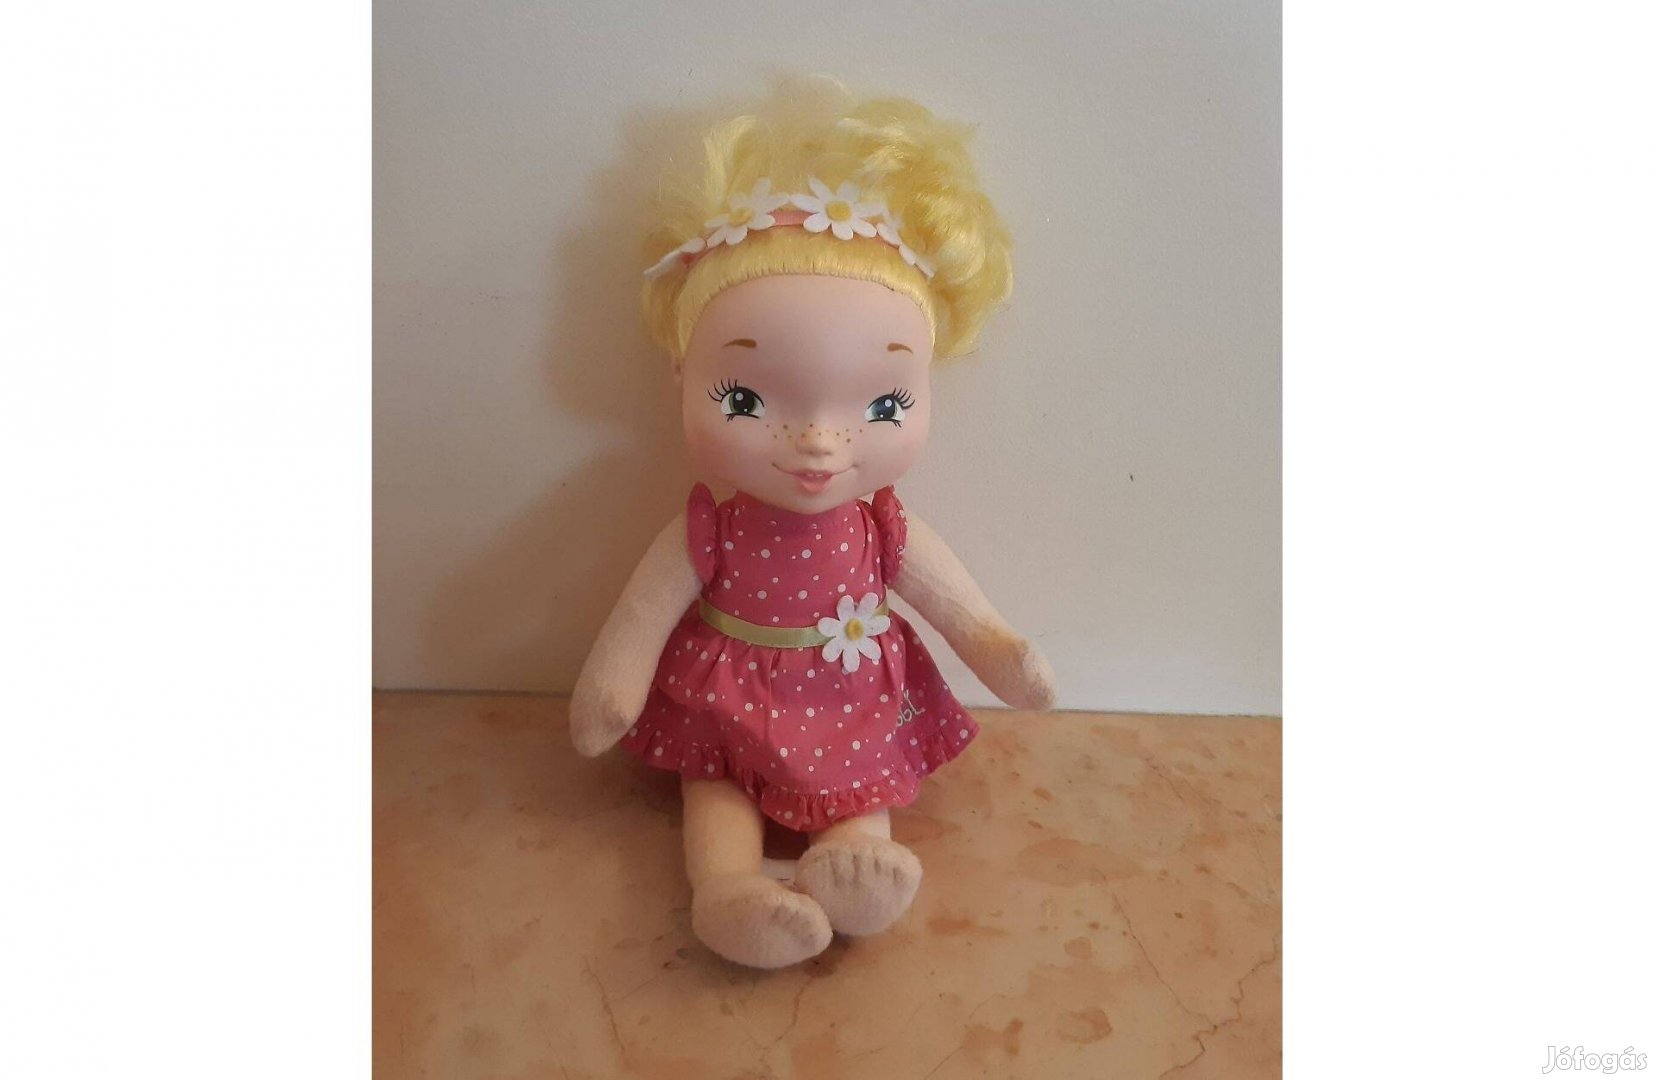 Újsz különleges Tilli Trixibelles szőke hajú hercegnő baba - ritkaság